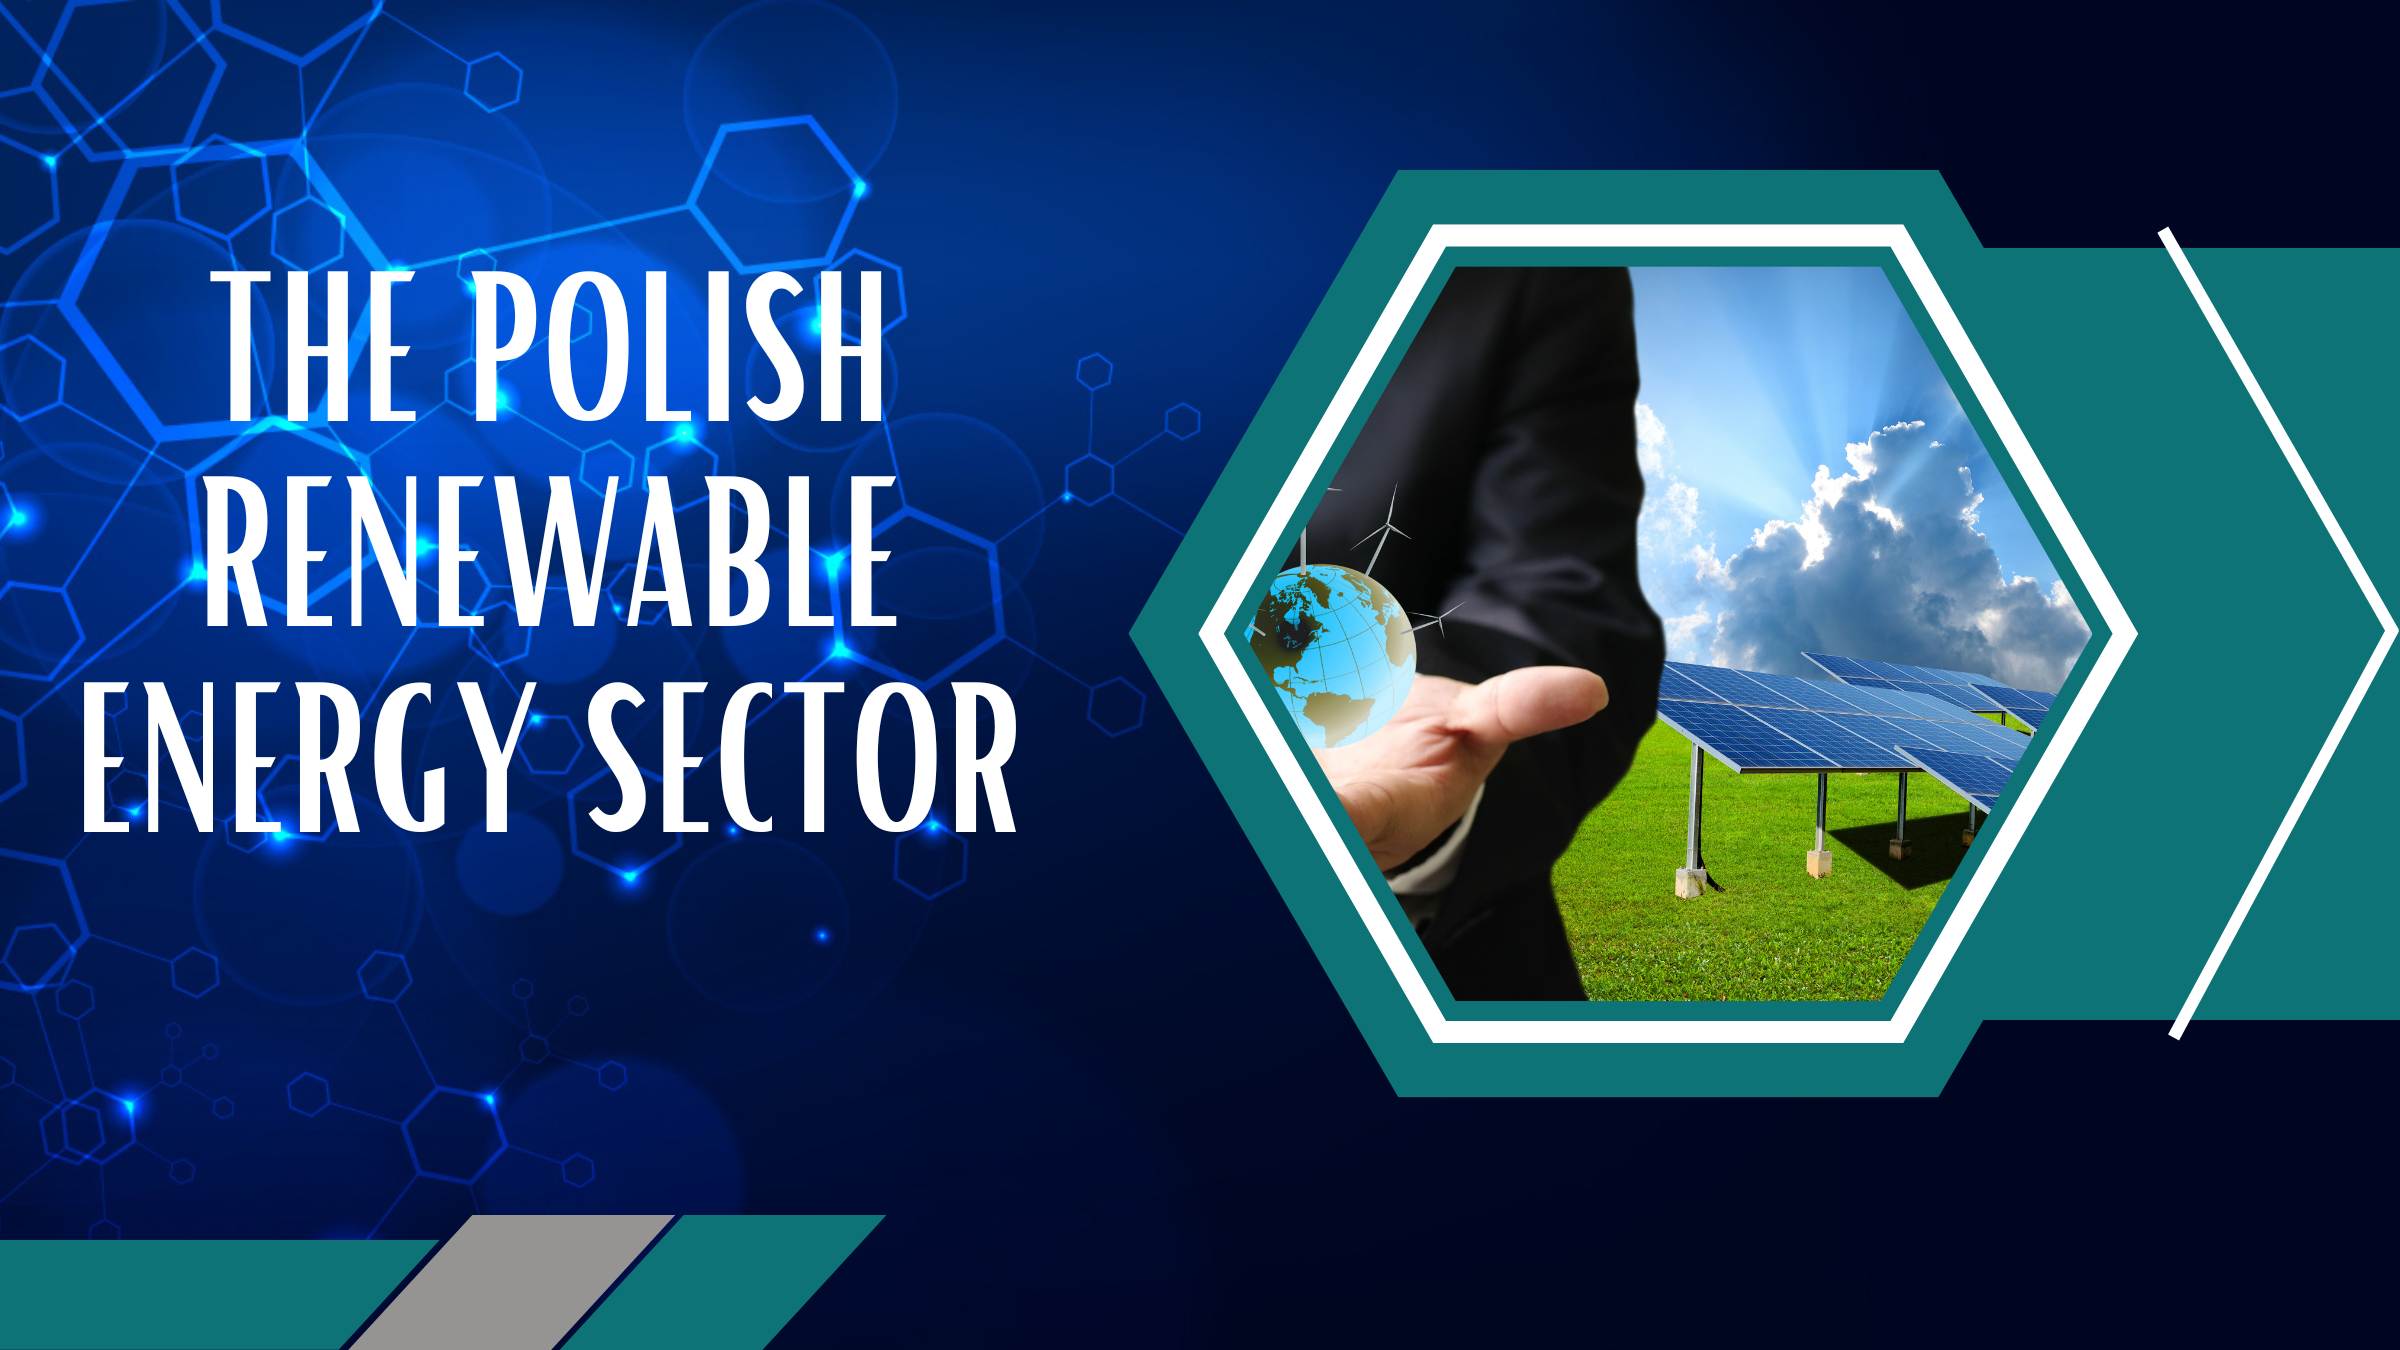 The Polish renewable energy sector